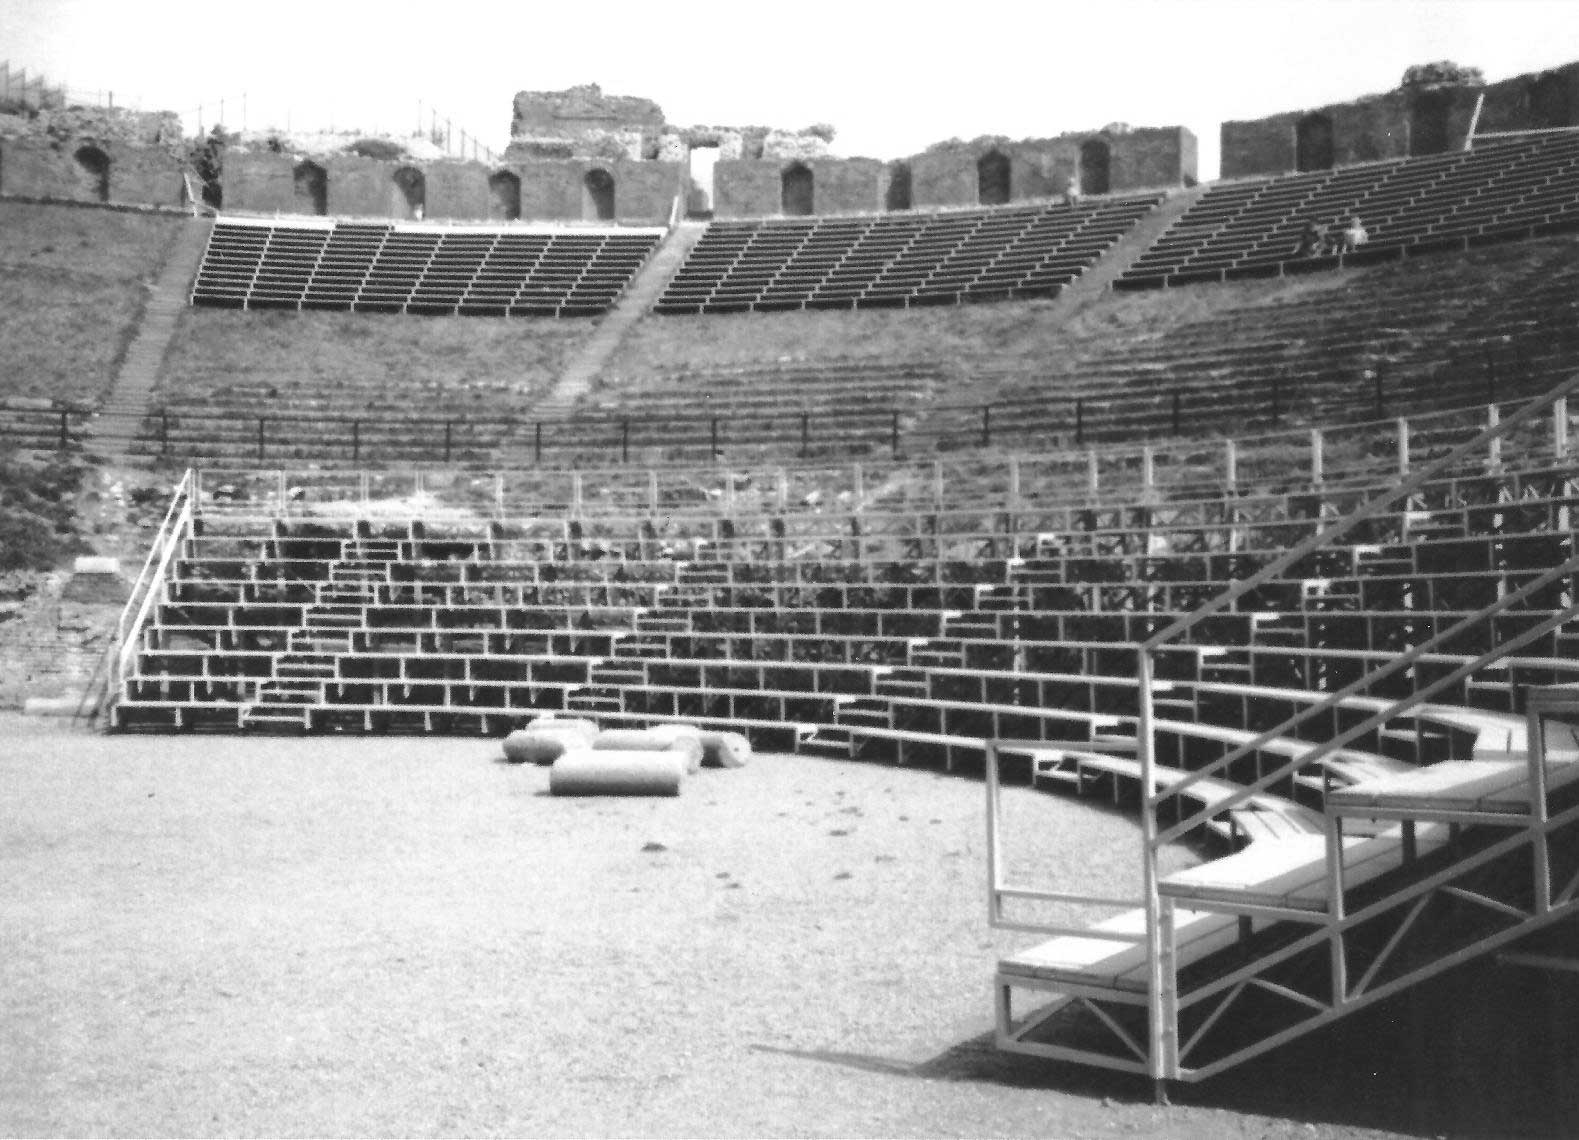 10 - Strutture teatrali mobili per il palcoscenico e la cavea del teatro greco-romano, Taormina; con E. Tonca - Vista esterna